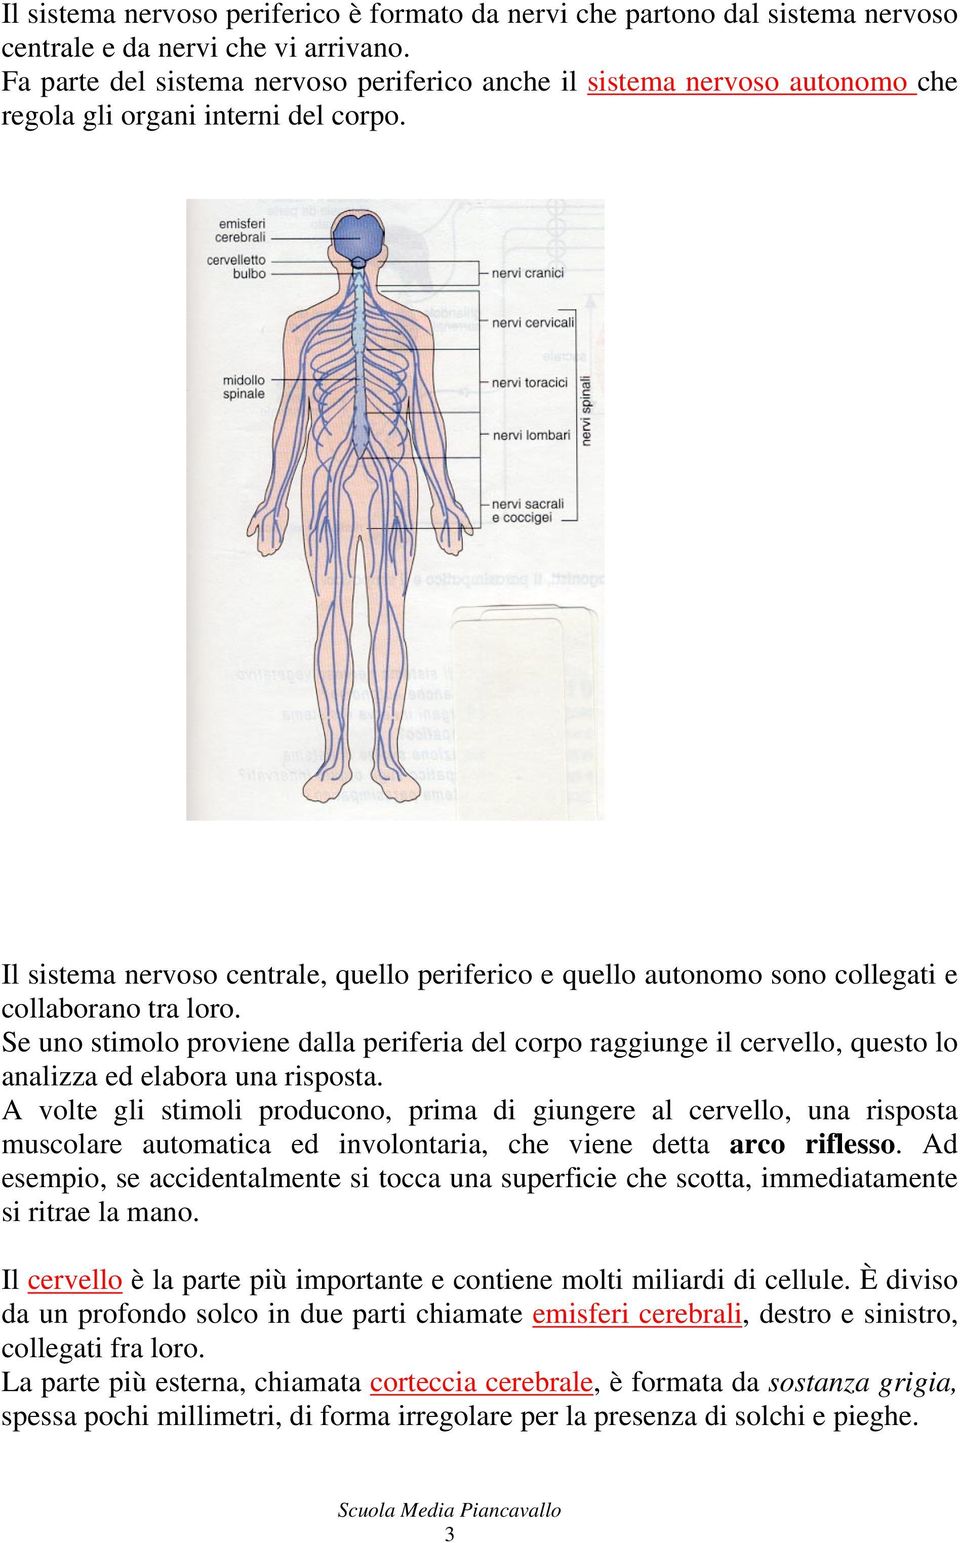 Il sistema nervoso centrale, quello periferico e quello autonomo sono collegati e collaborano tra loro.